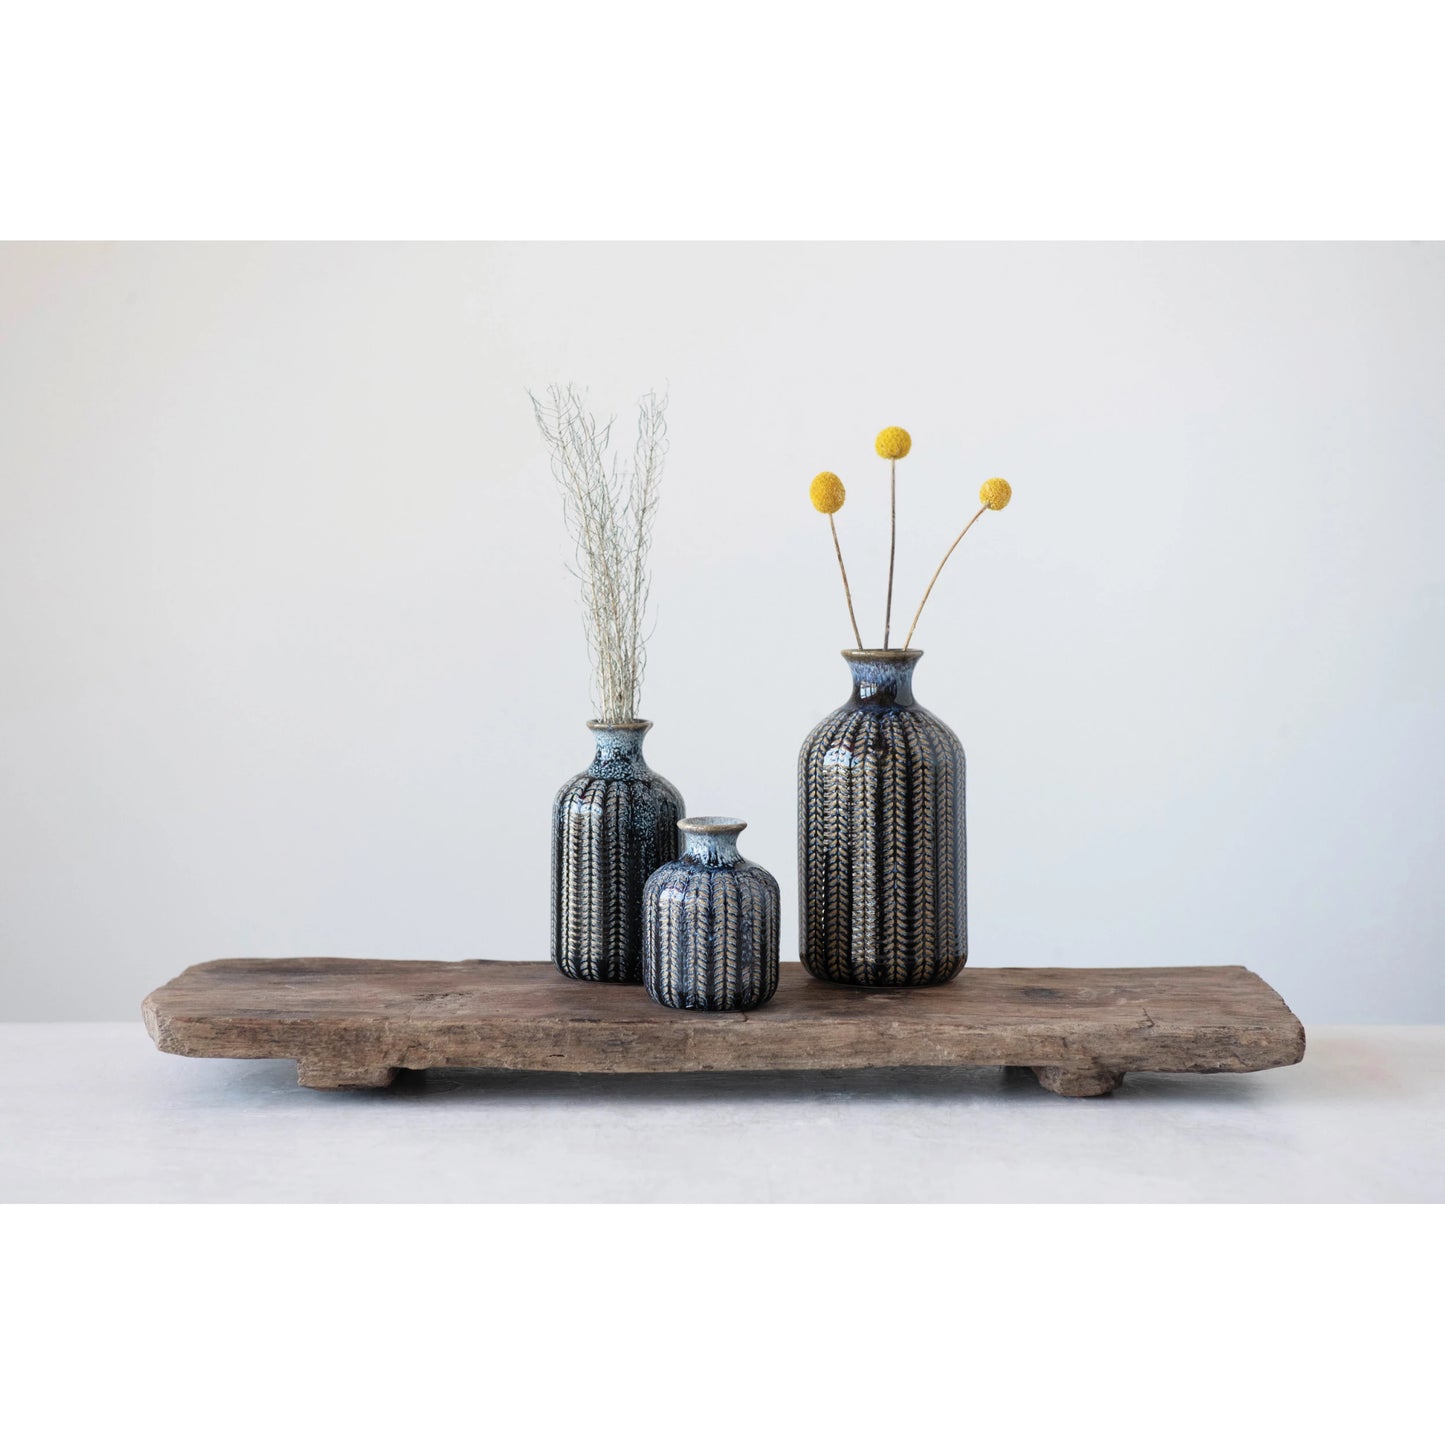 Embossed Stoneware Vases with Glaze